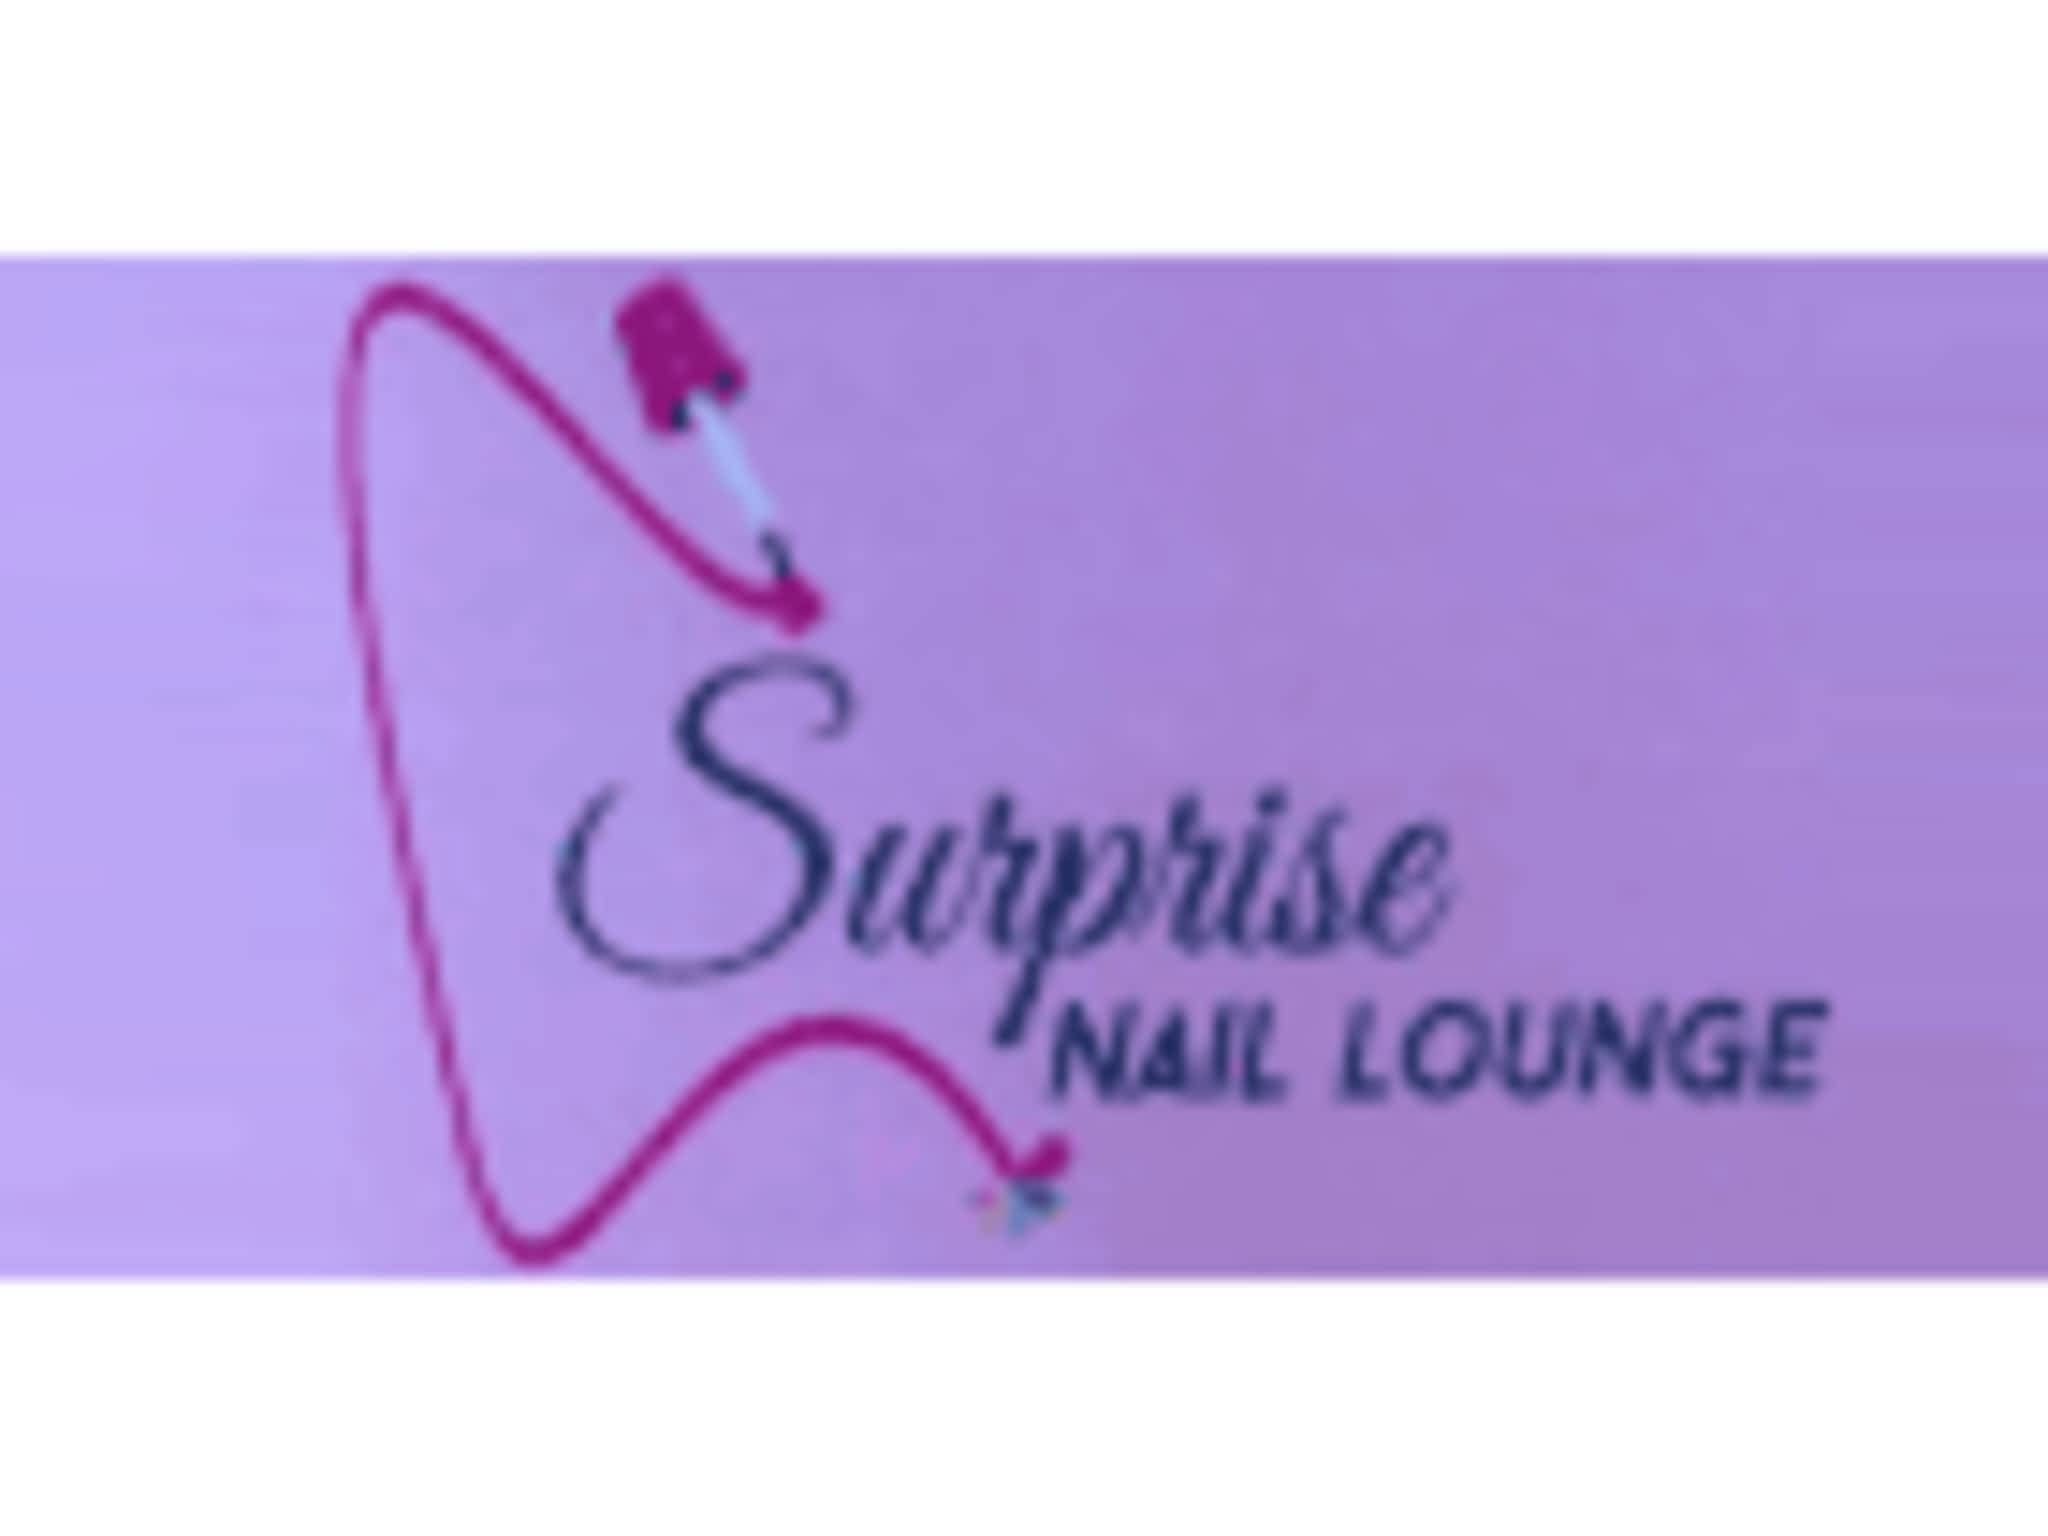 photo Surprise Nails Lounge